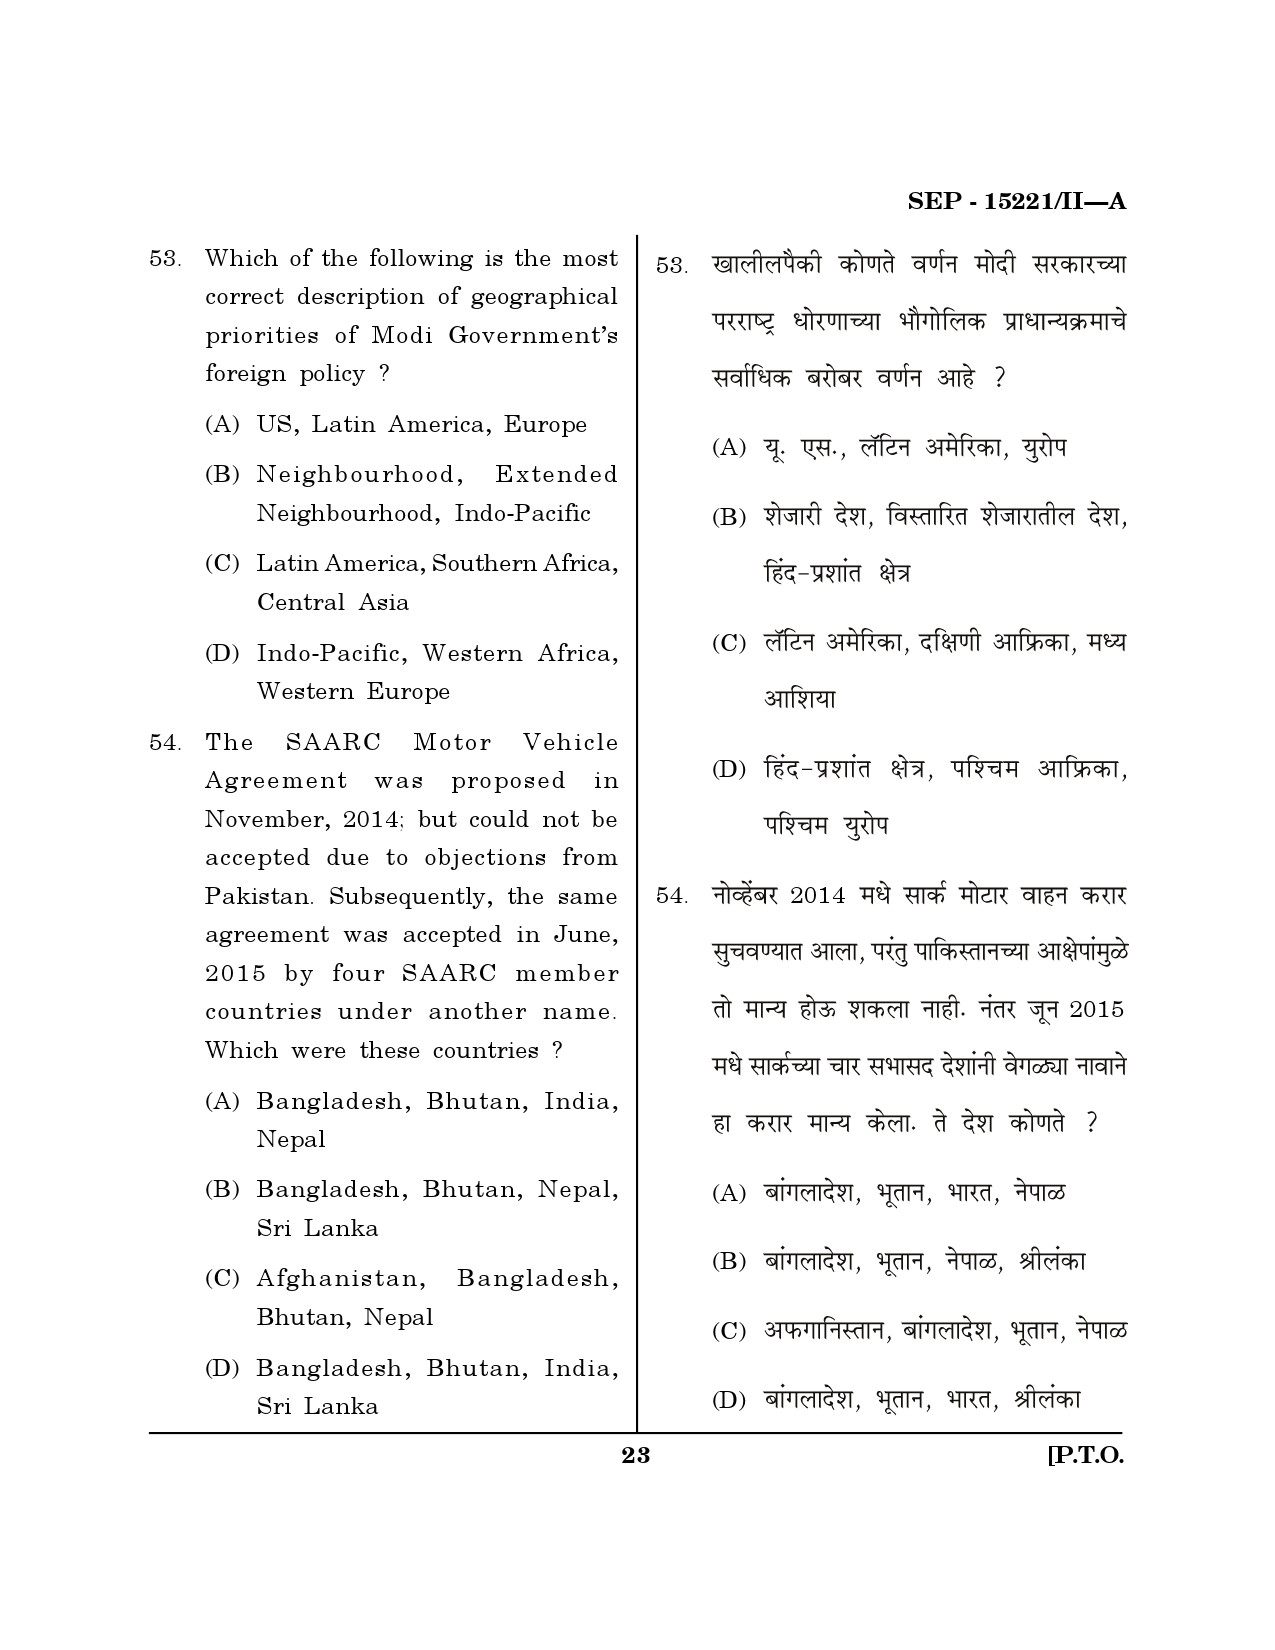 Maharashtra SET Political Science Exam Question Paper September 2021 22